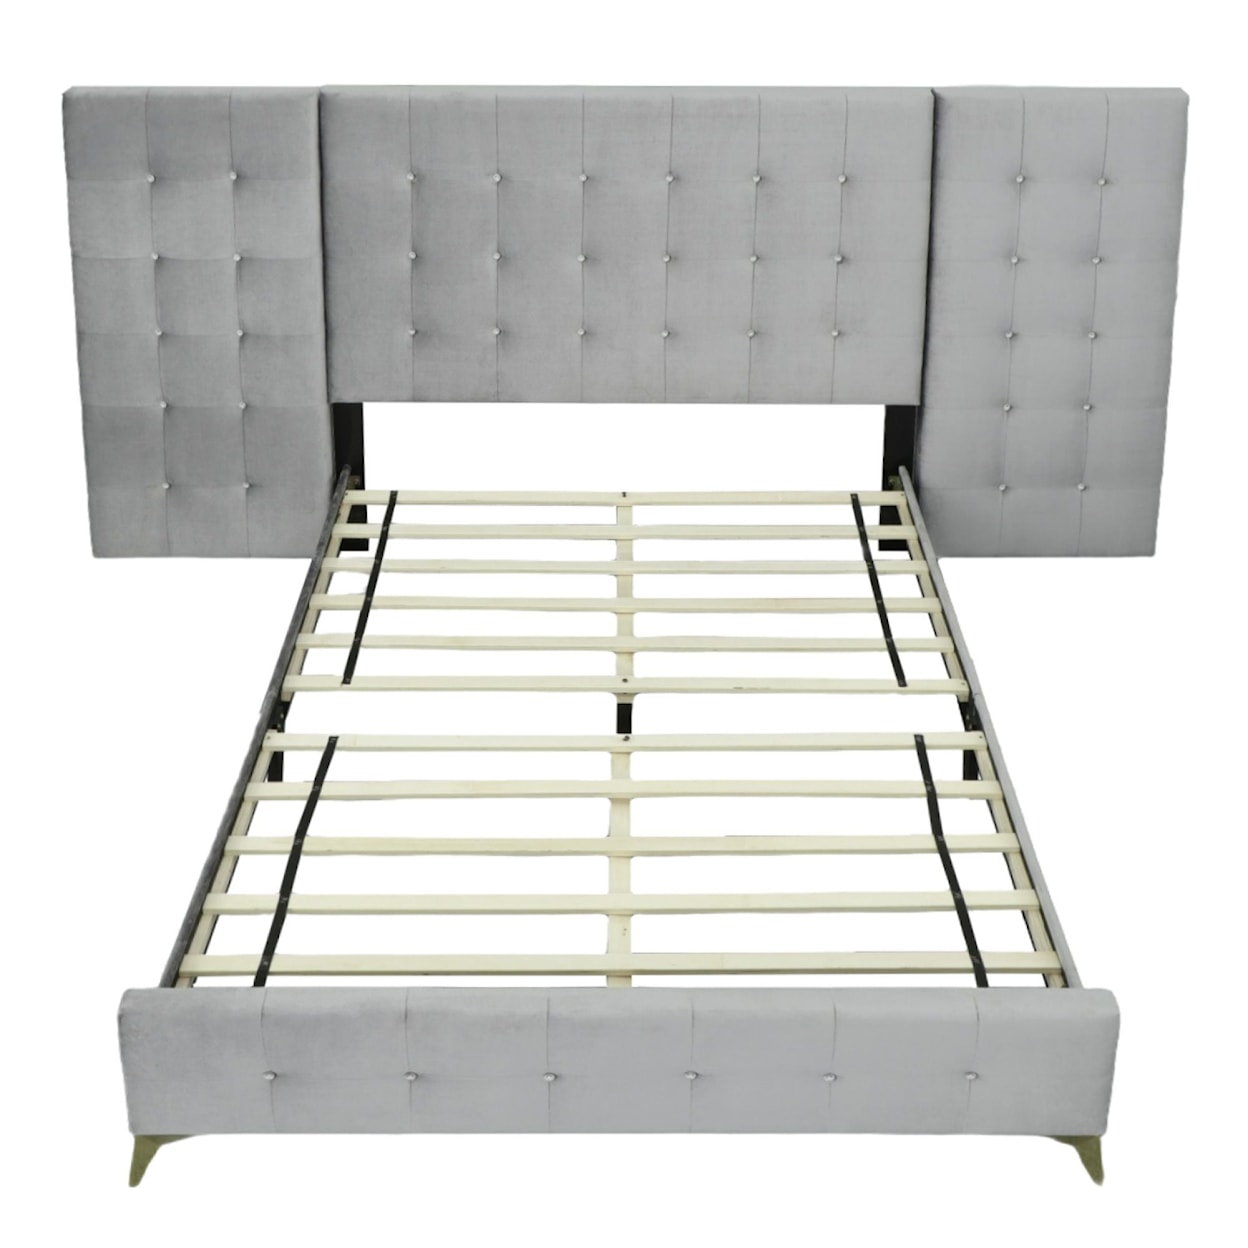 Elements International Emma Upholstered Bed